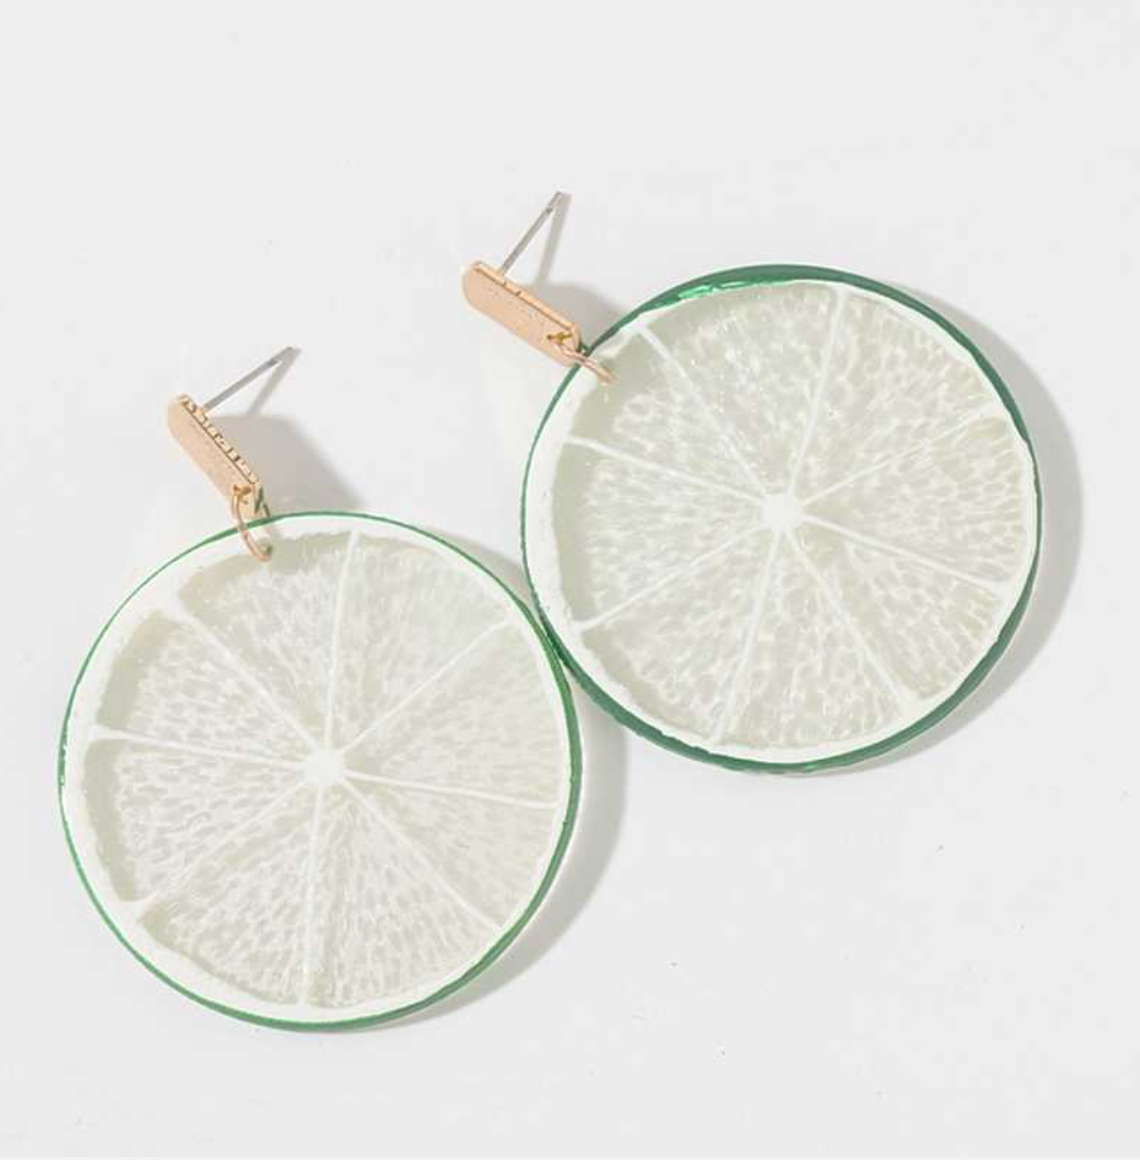 Lemon Shape Modern Drop Earrings